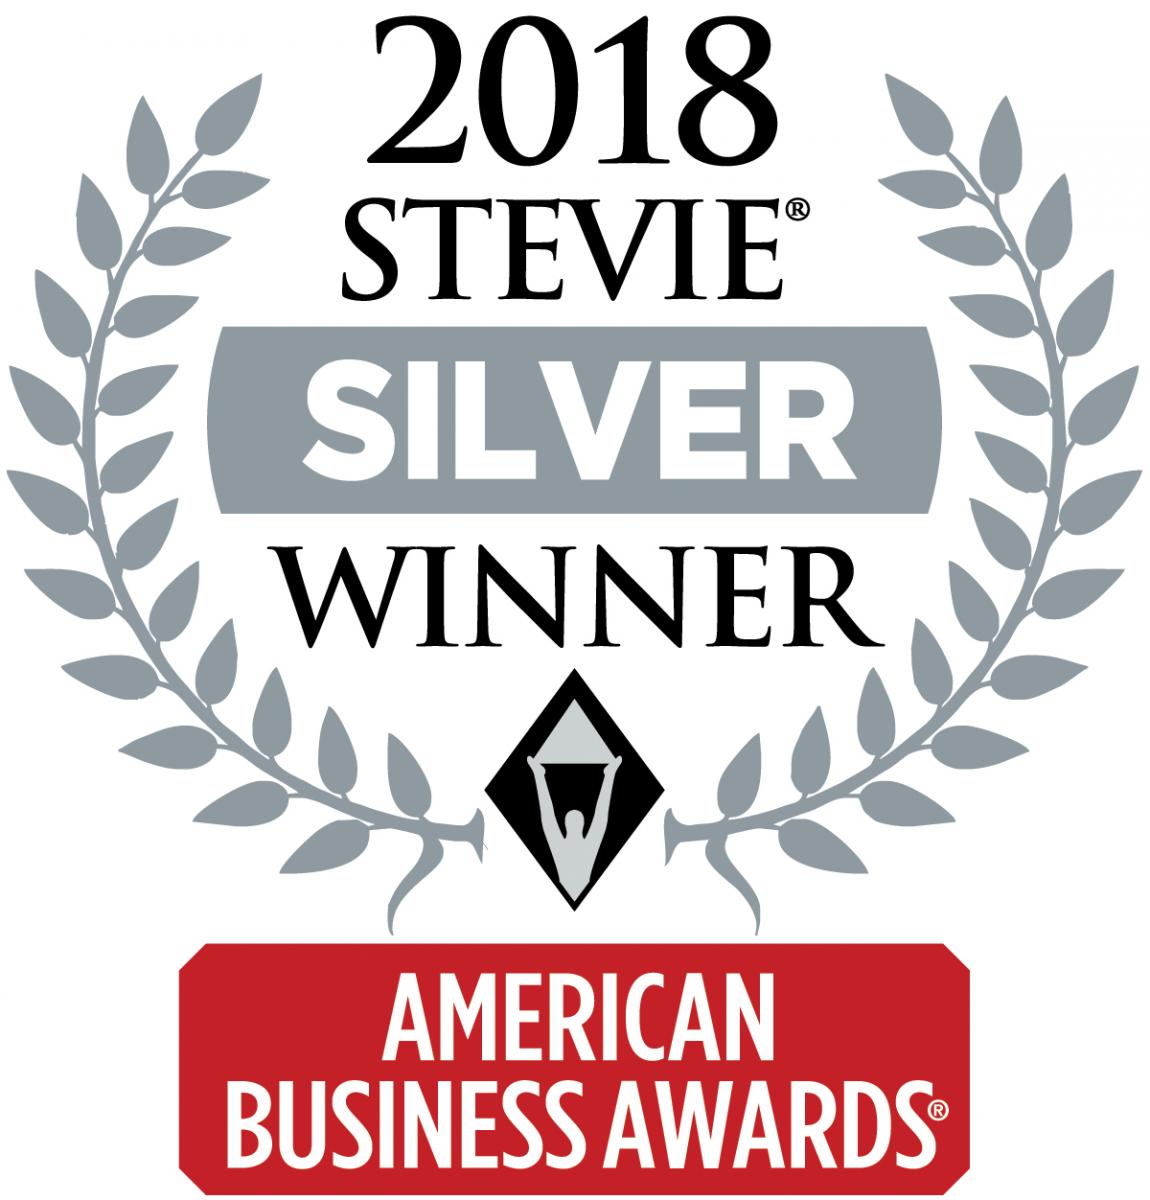 Silver Stevie Award Winner